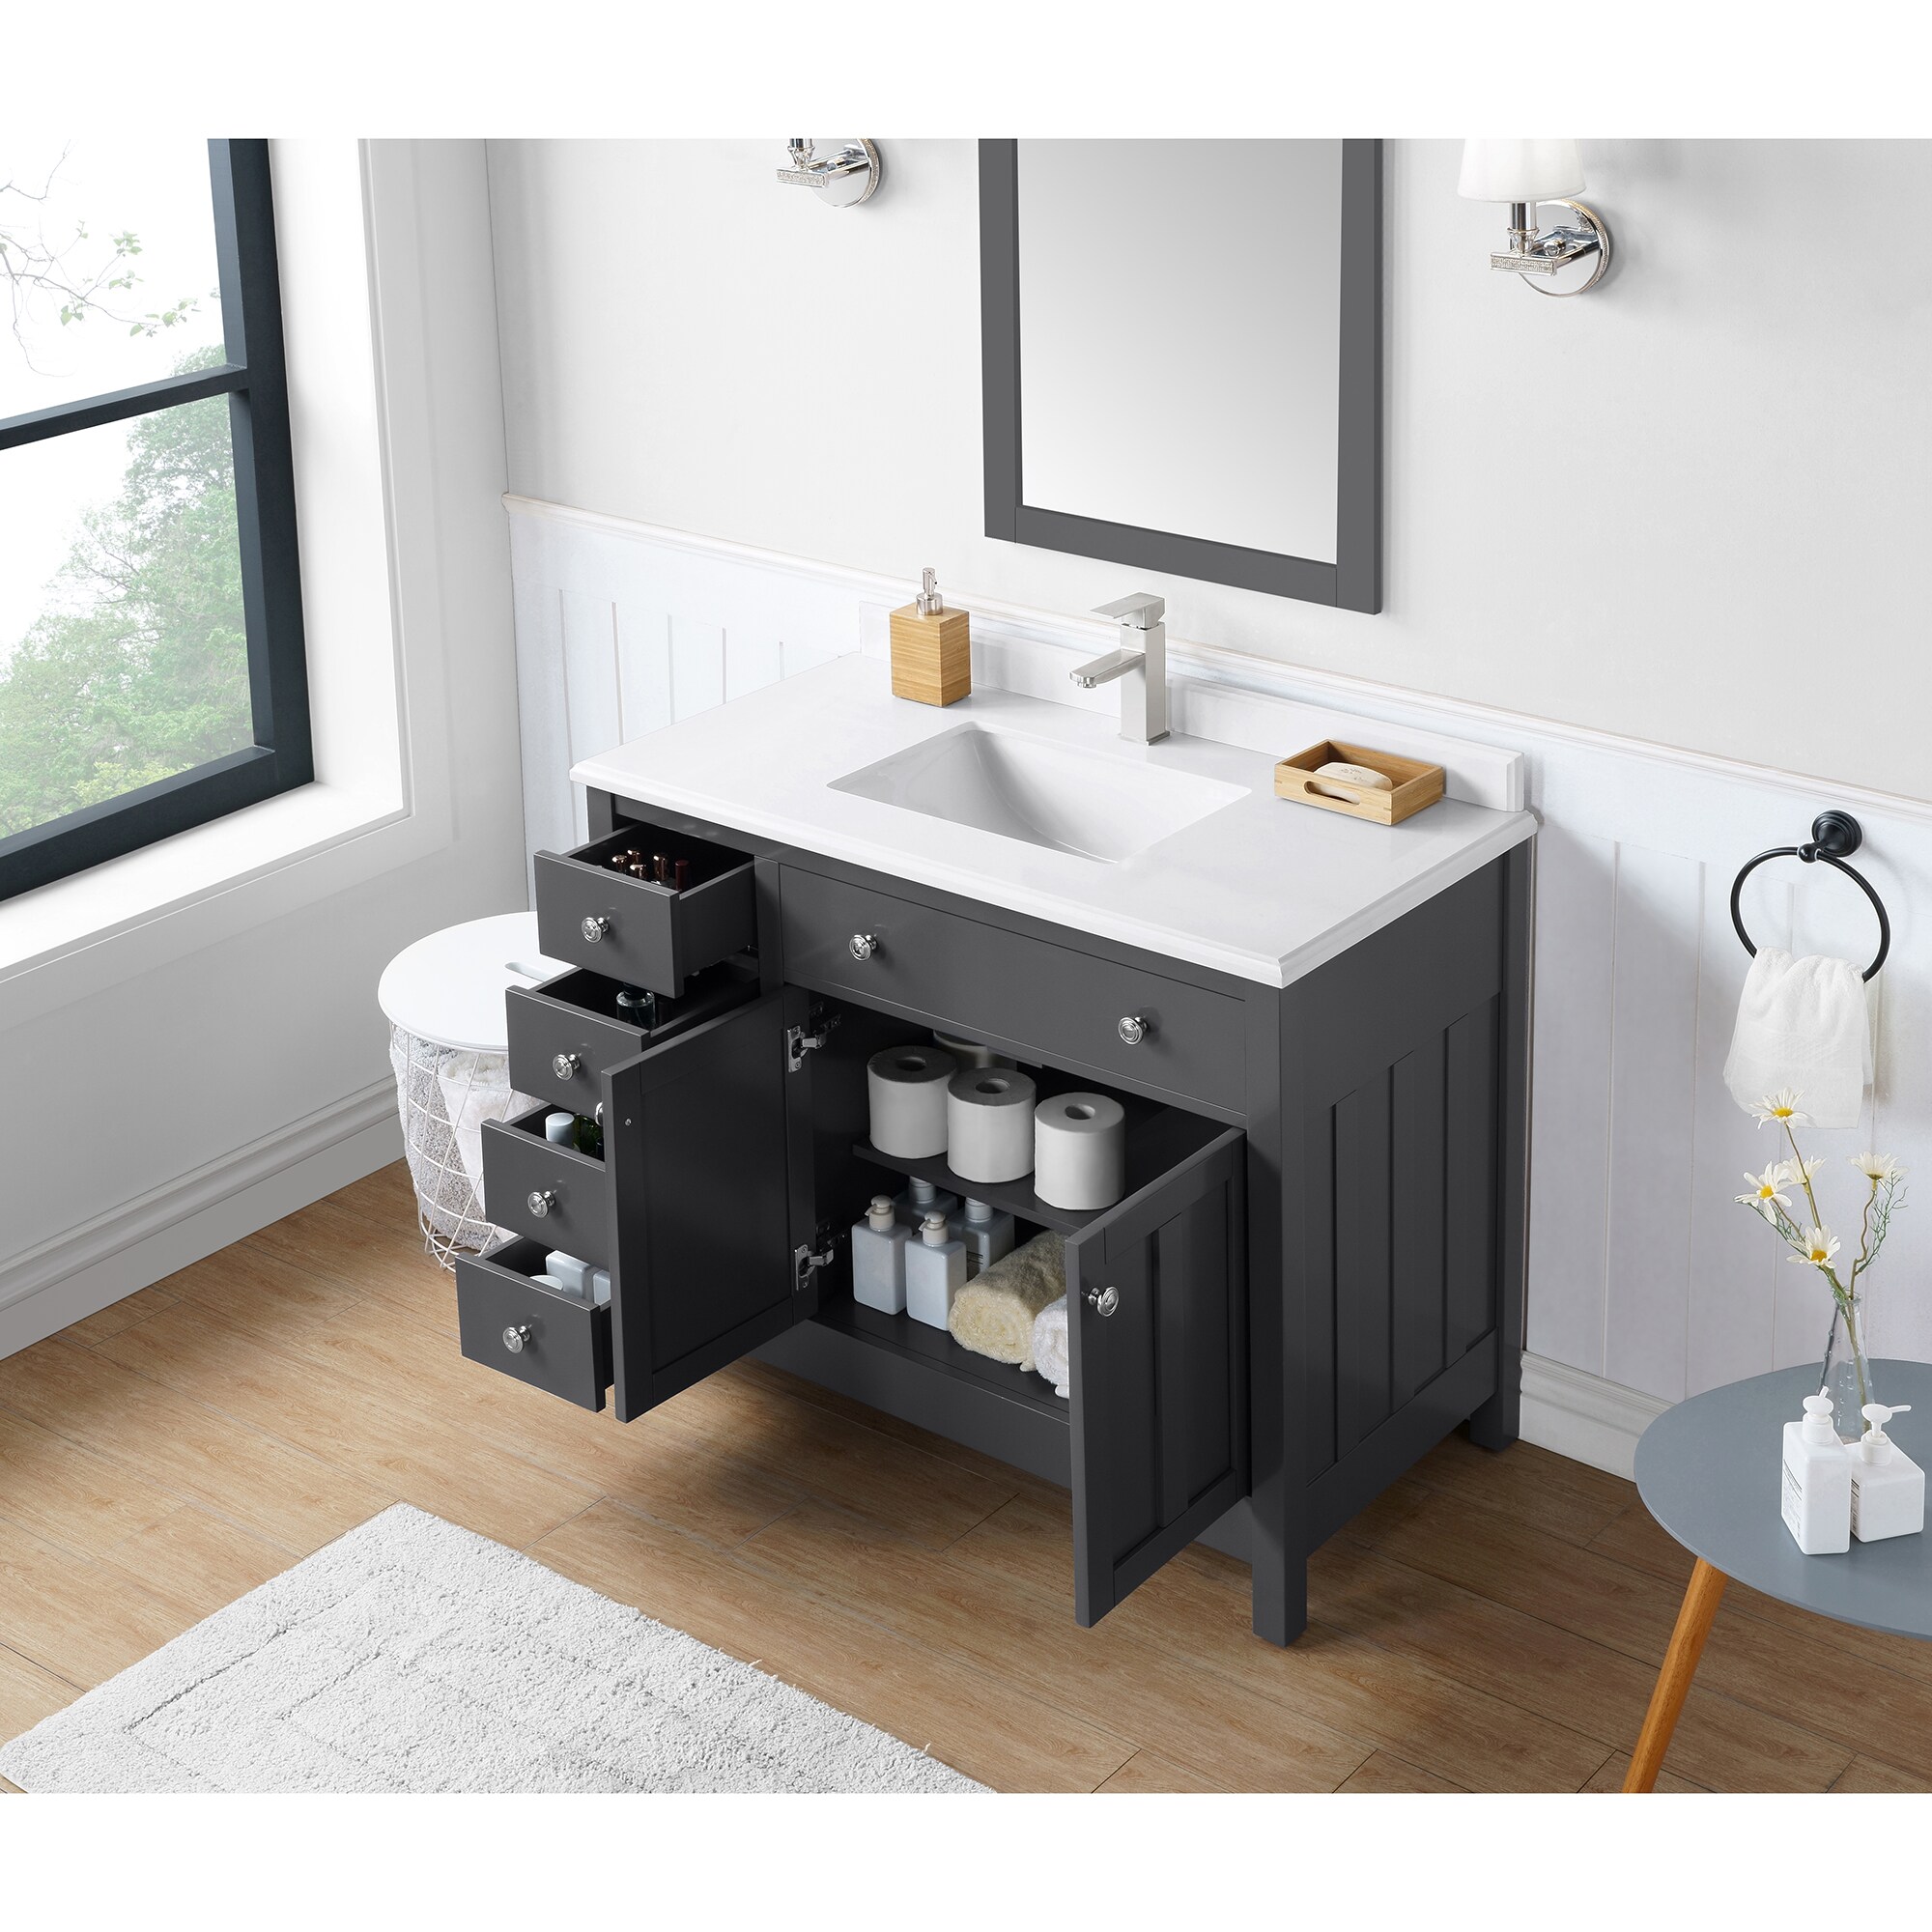 600 Bathroom Vanity Unit Countertop Basin Round Circular Floor Standing Charcoal 